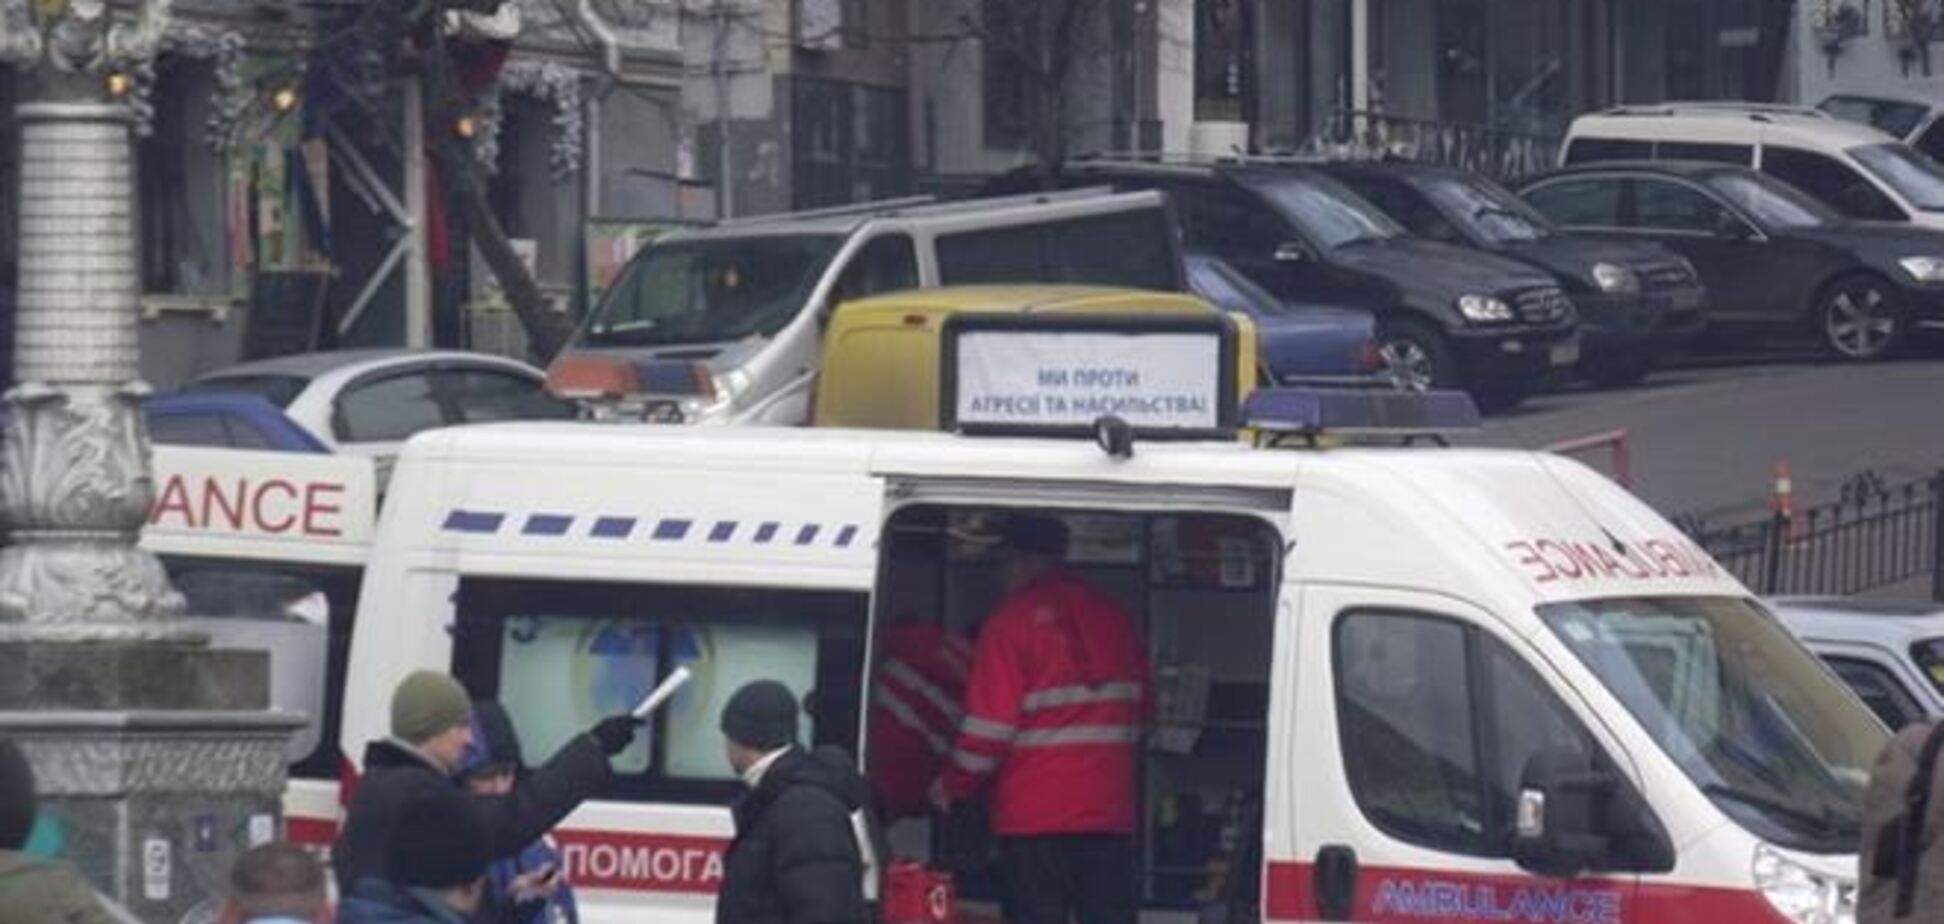 Міліція може заарештувати поранених, які потрапили в БСП - Євромайдан SOS